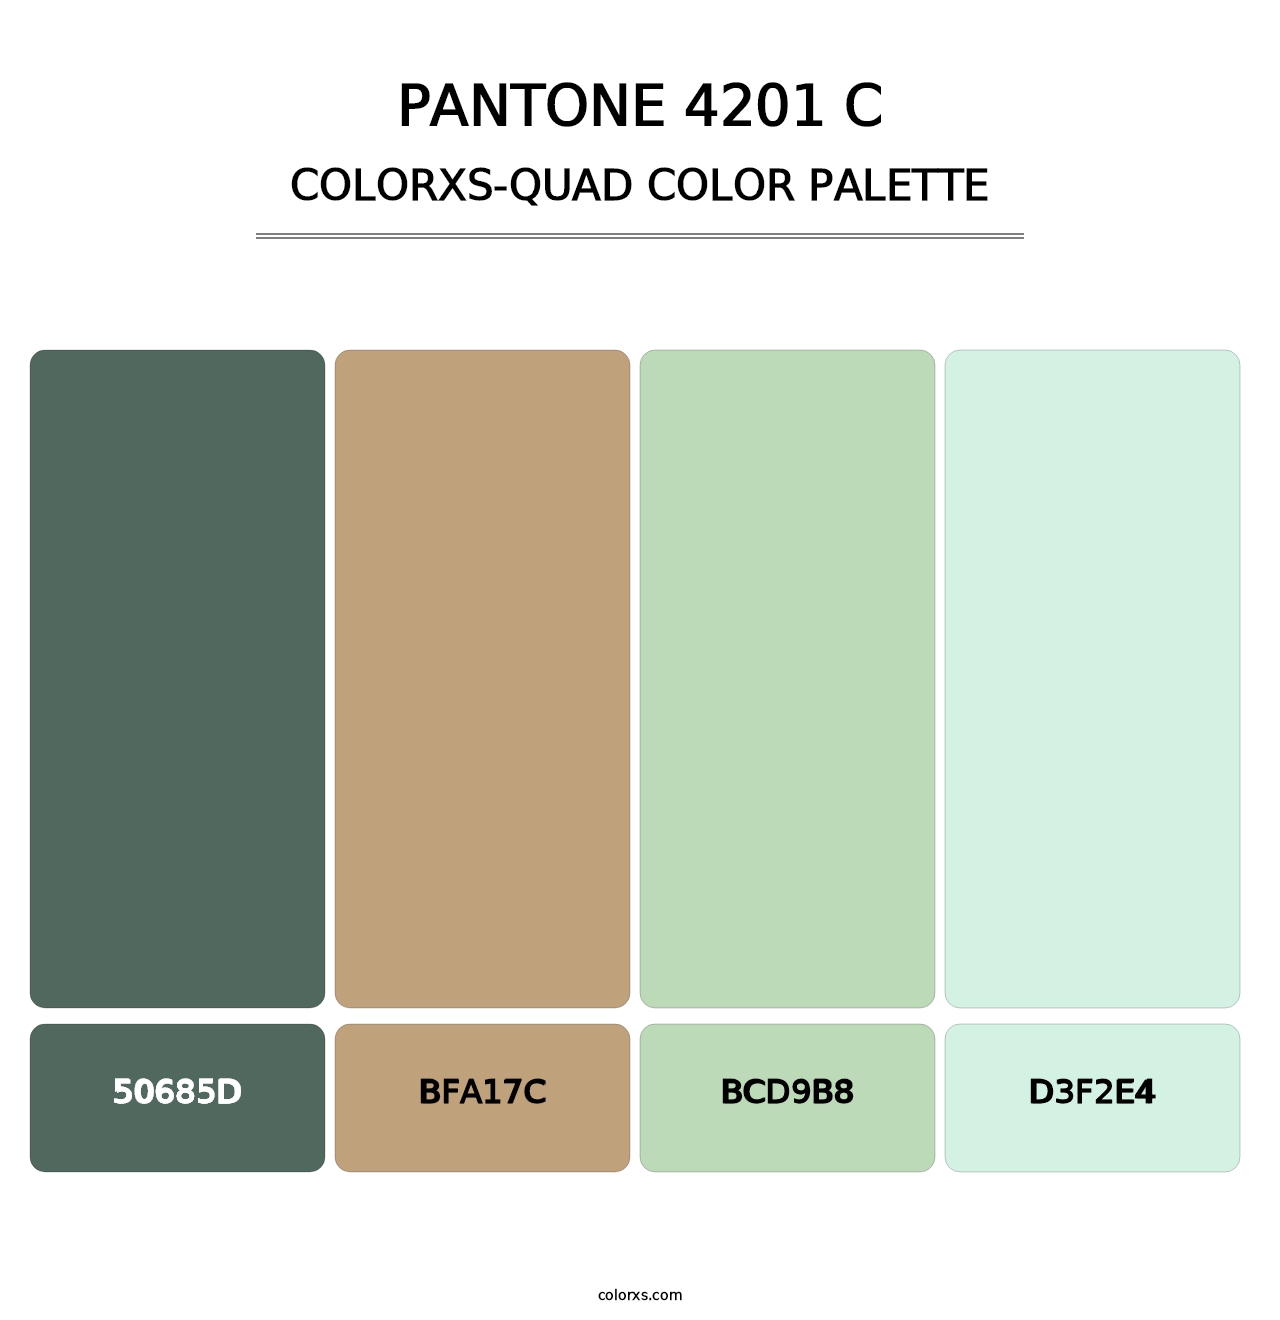 PANTONE 4201 C - Colorxs Quad Palette